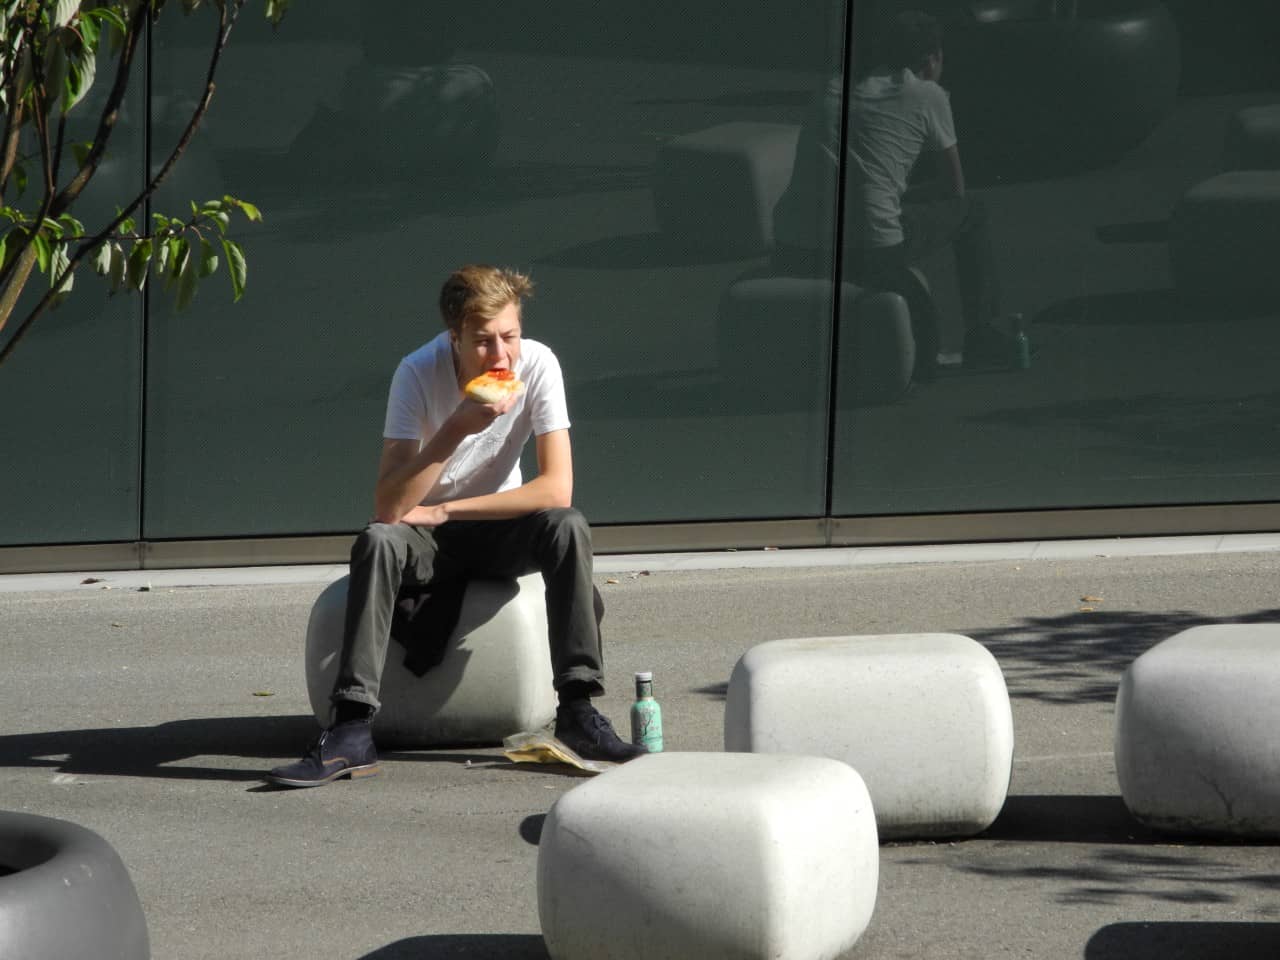 Eine junge Person sitzt auf einem Betonelement.